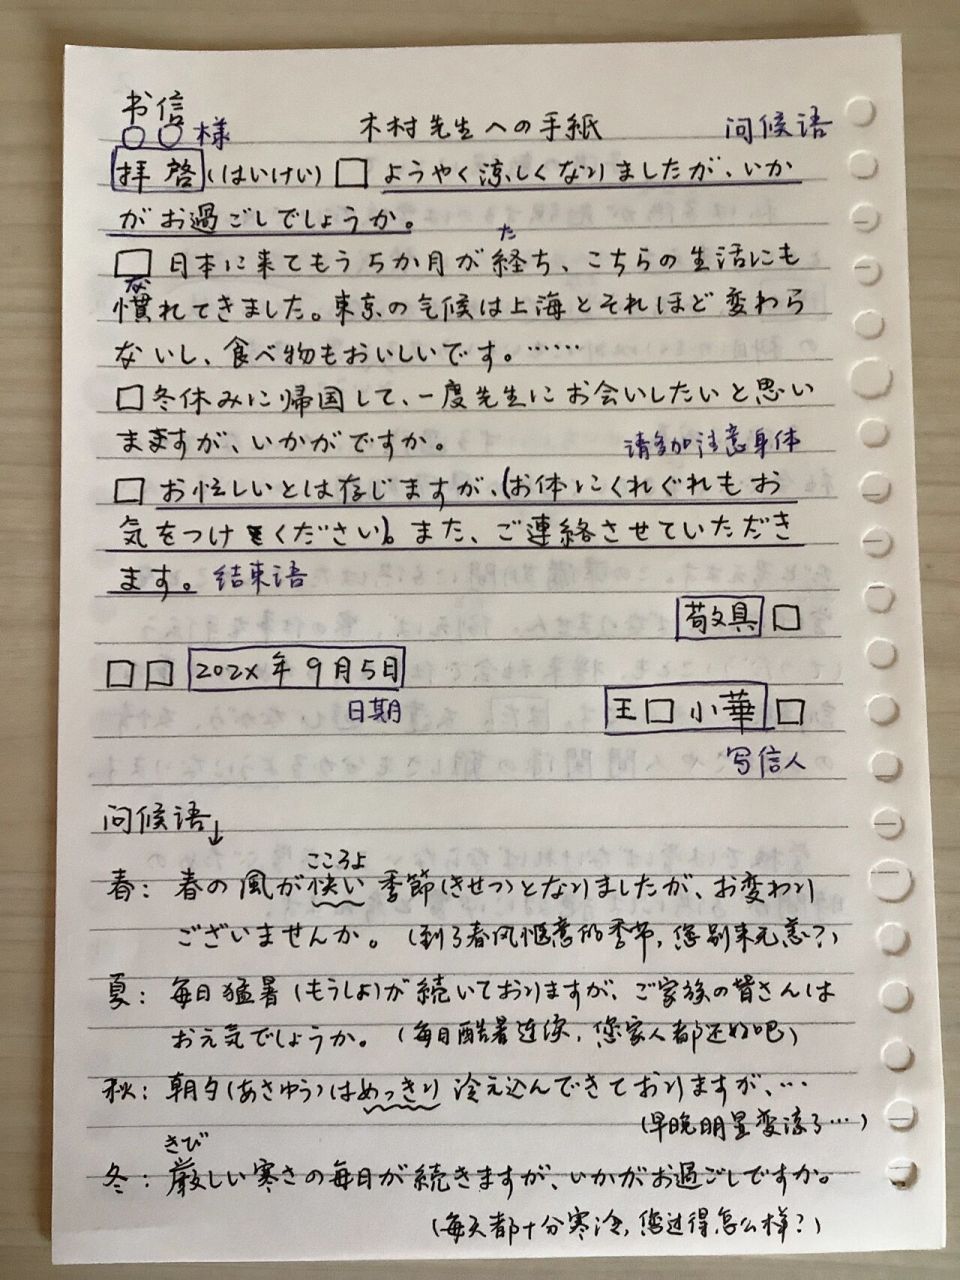 日文写信格式图片